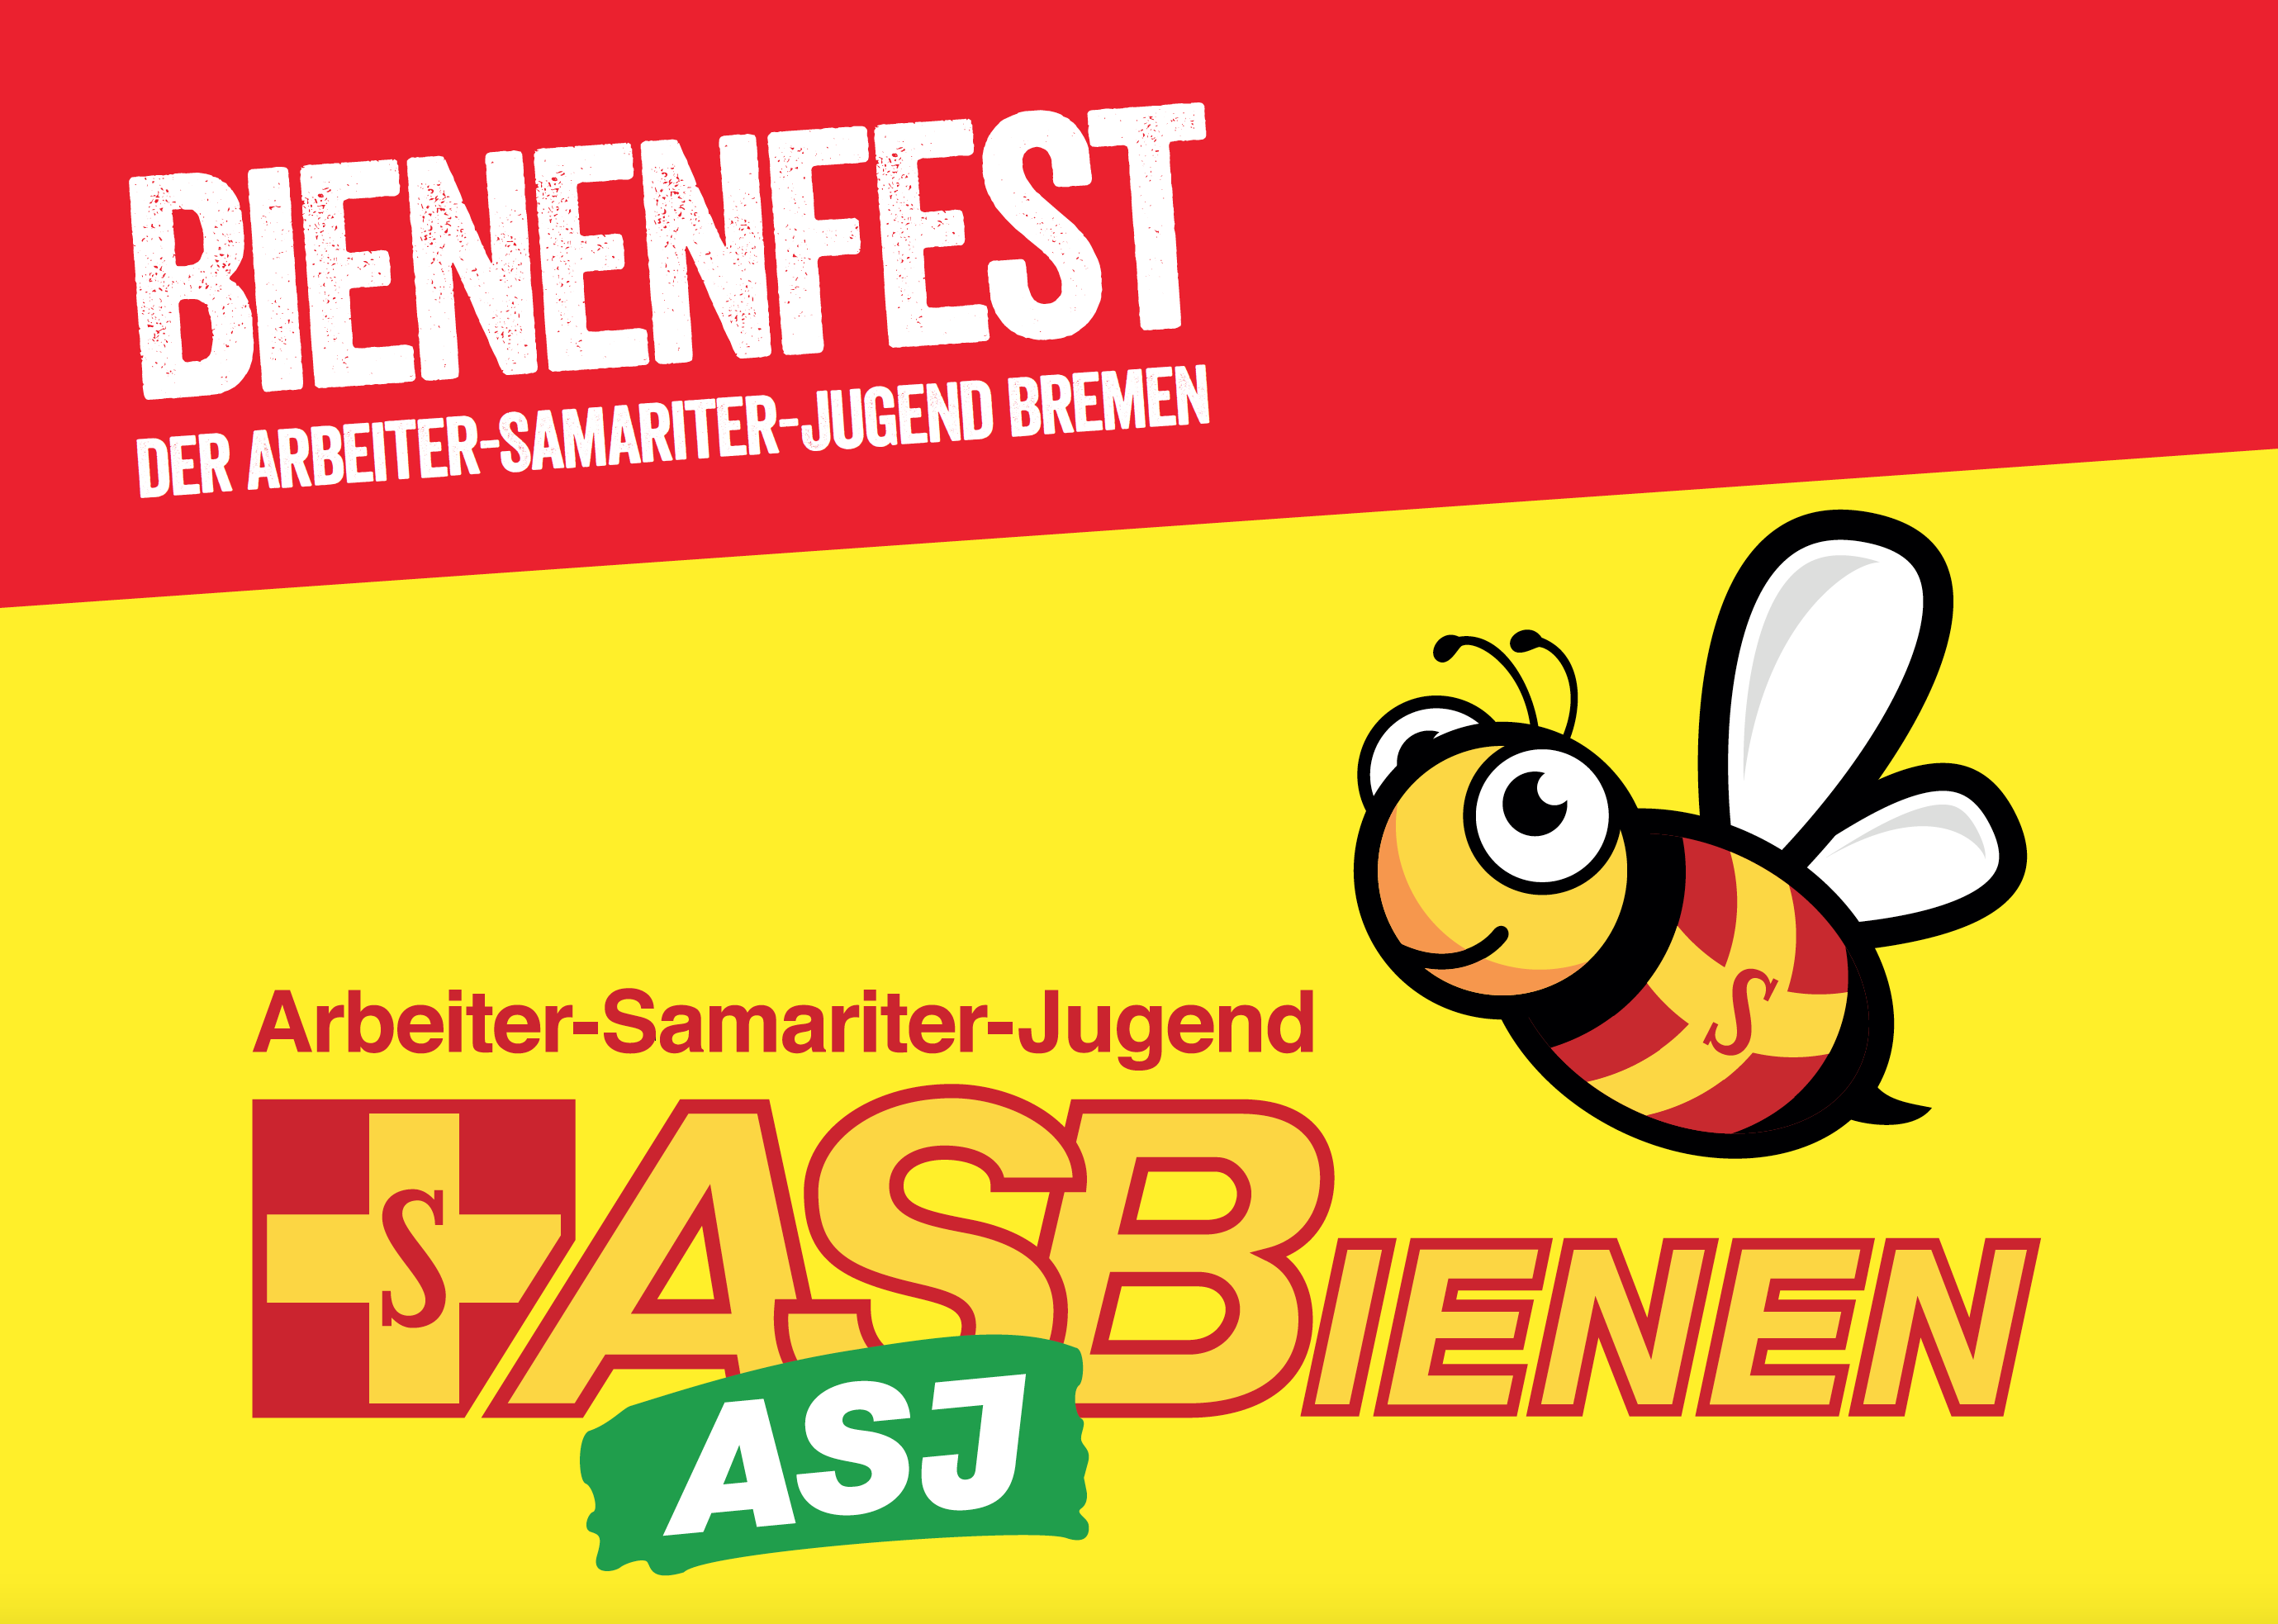 Großes Bienenfest der Arbeiter-Samariter-Jugend Bremen